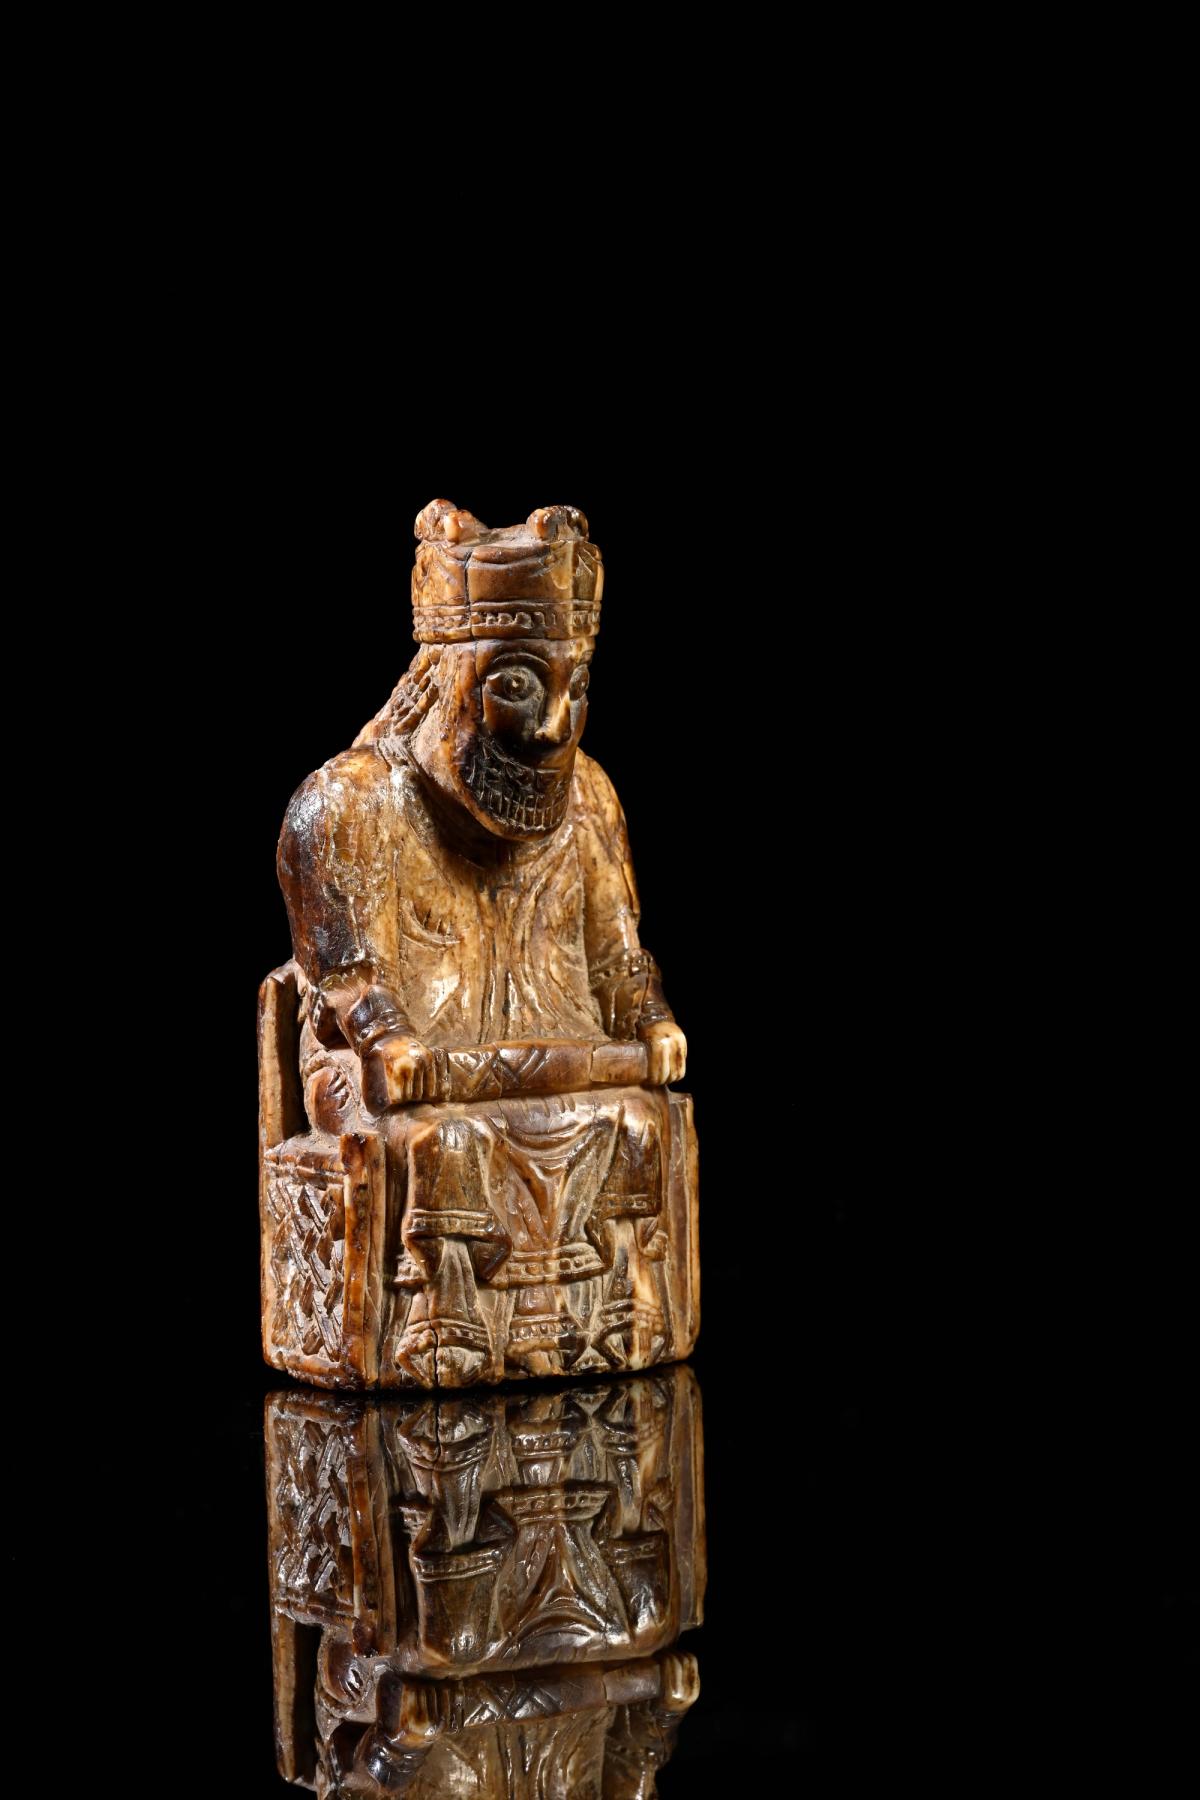 Suède XIIIe siècle, Pion d’échecs, défense de morse sculptée en ronde-bosse, patine brune. Courtesy Coutau-Bégarie